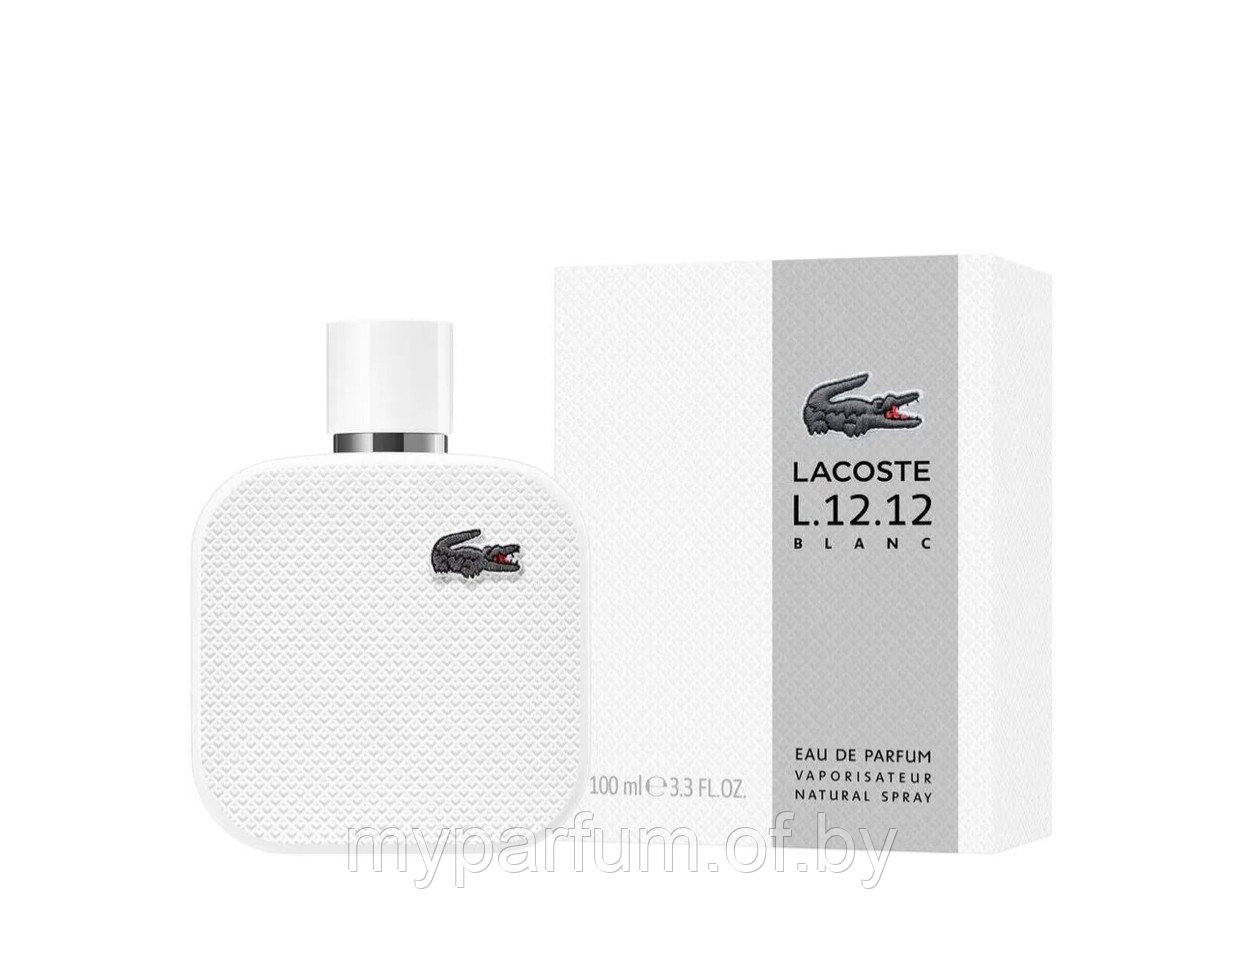 Мужская туалетная вода  Lacoste L.12.12 Blanc Pour Homme edp 100ml (PREMIUM)